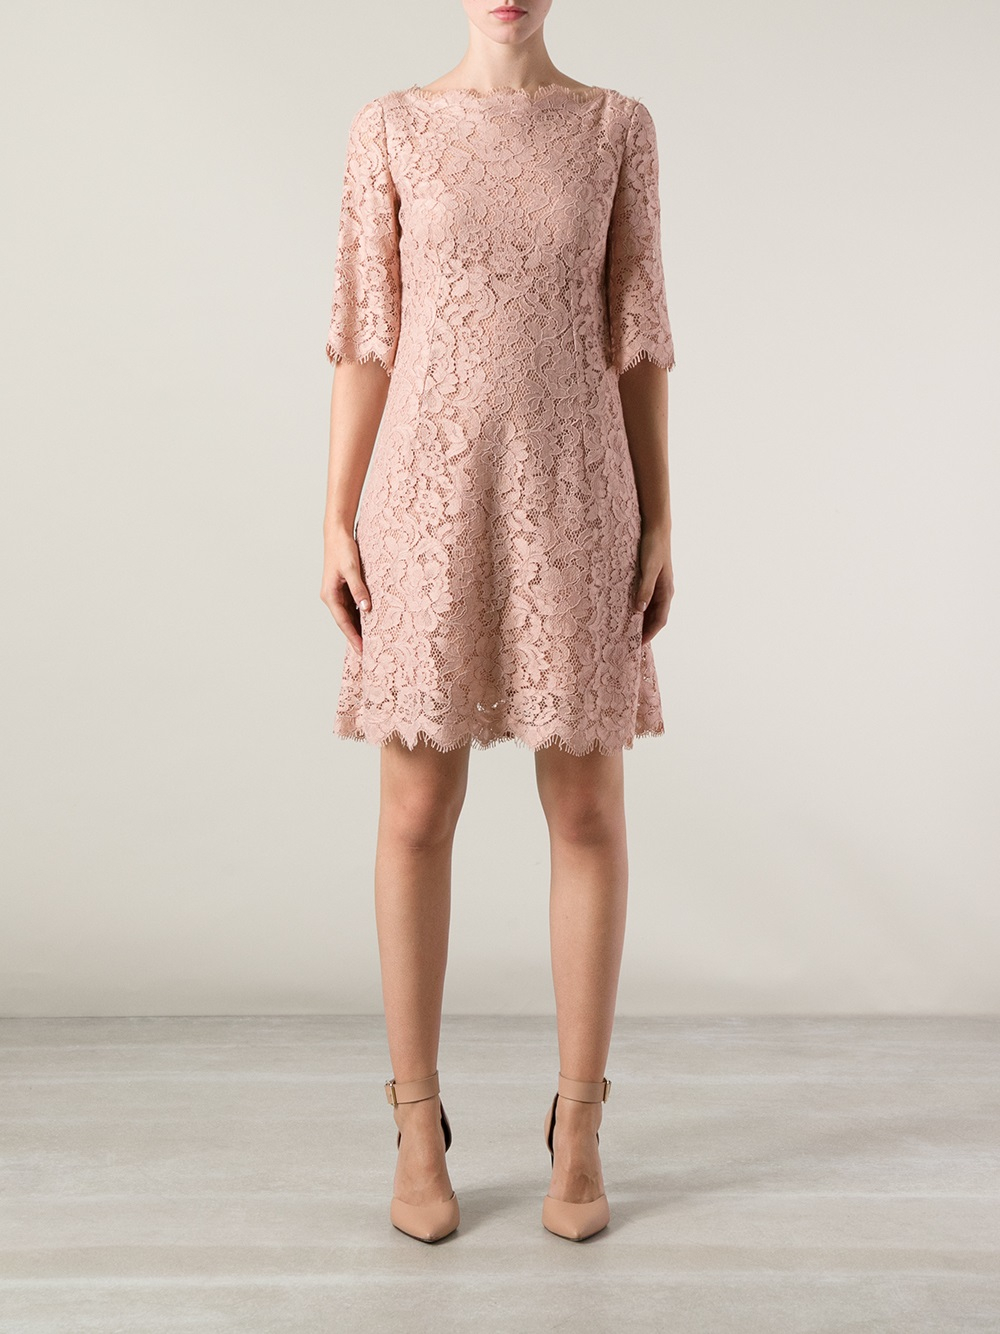 Dolce \u0026 Gabbana Lace Dress in Pink 